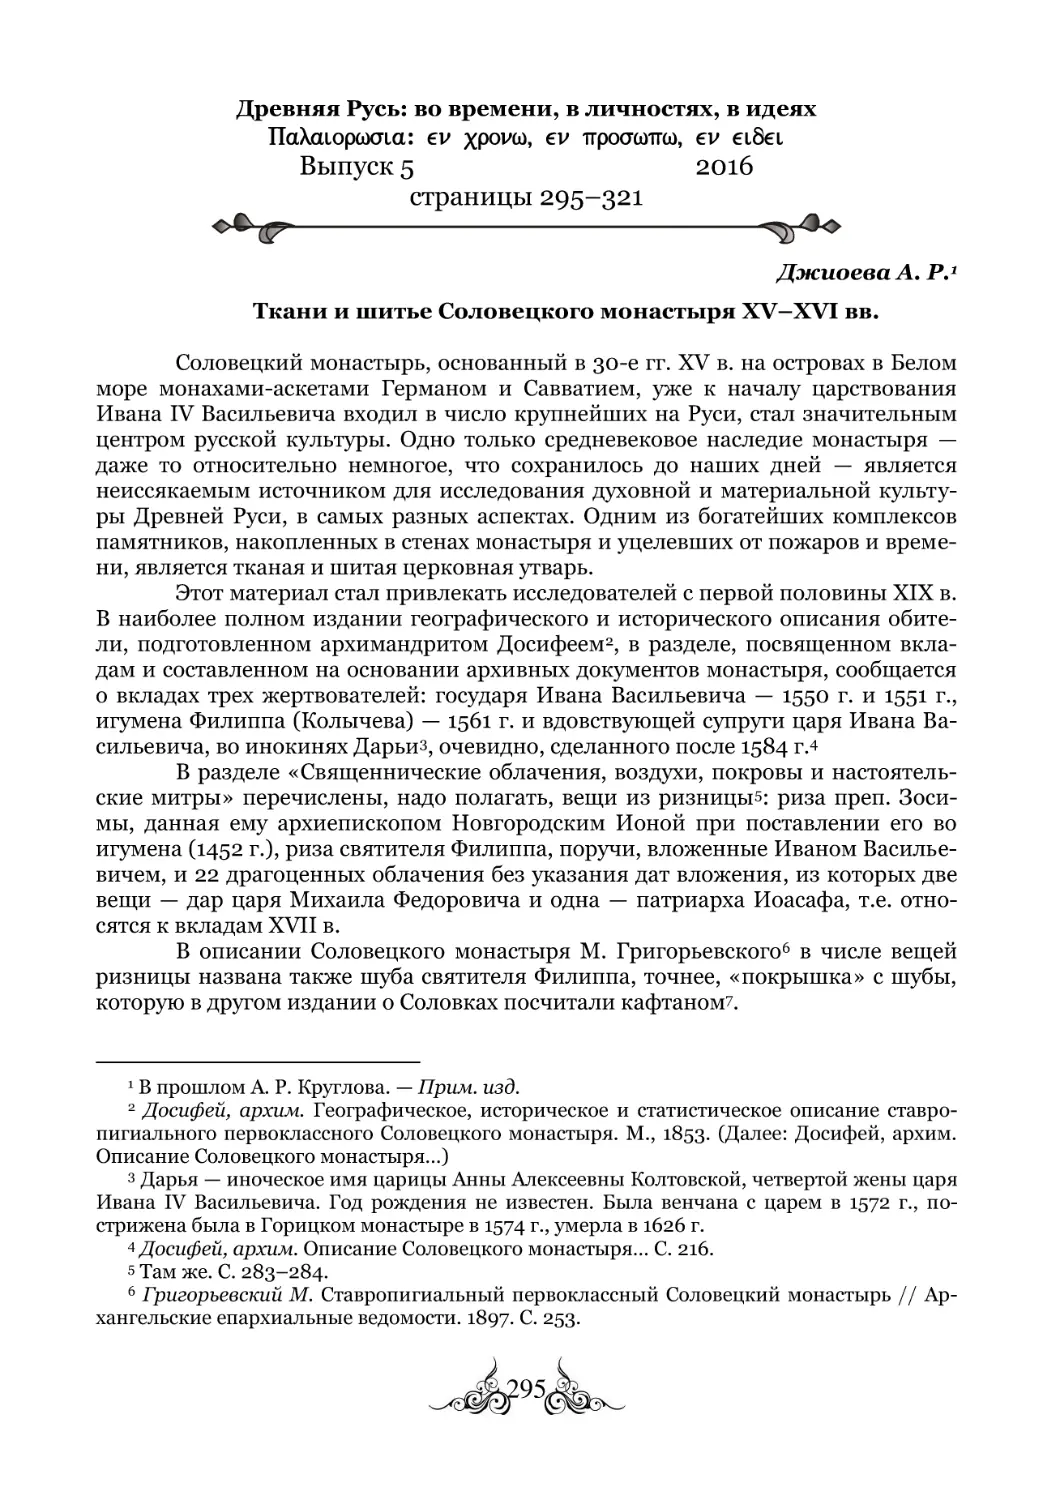 Джиоева А. Р. Ткани и шитье Соловецкого монастыря XV-XVI вв